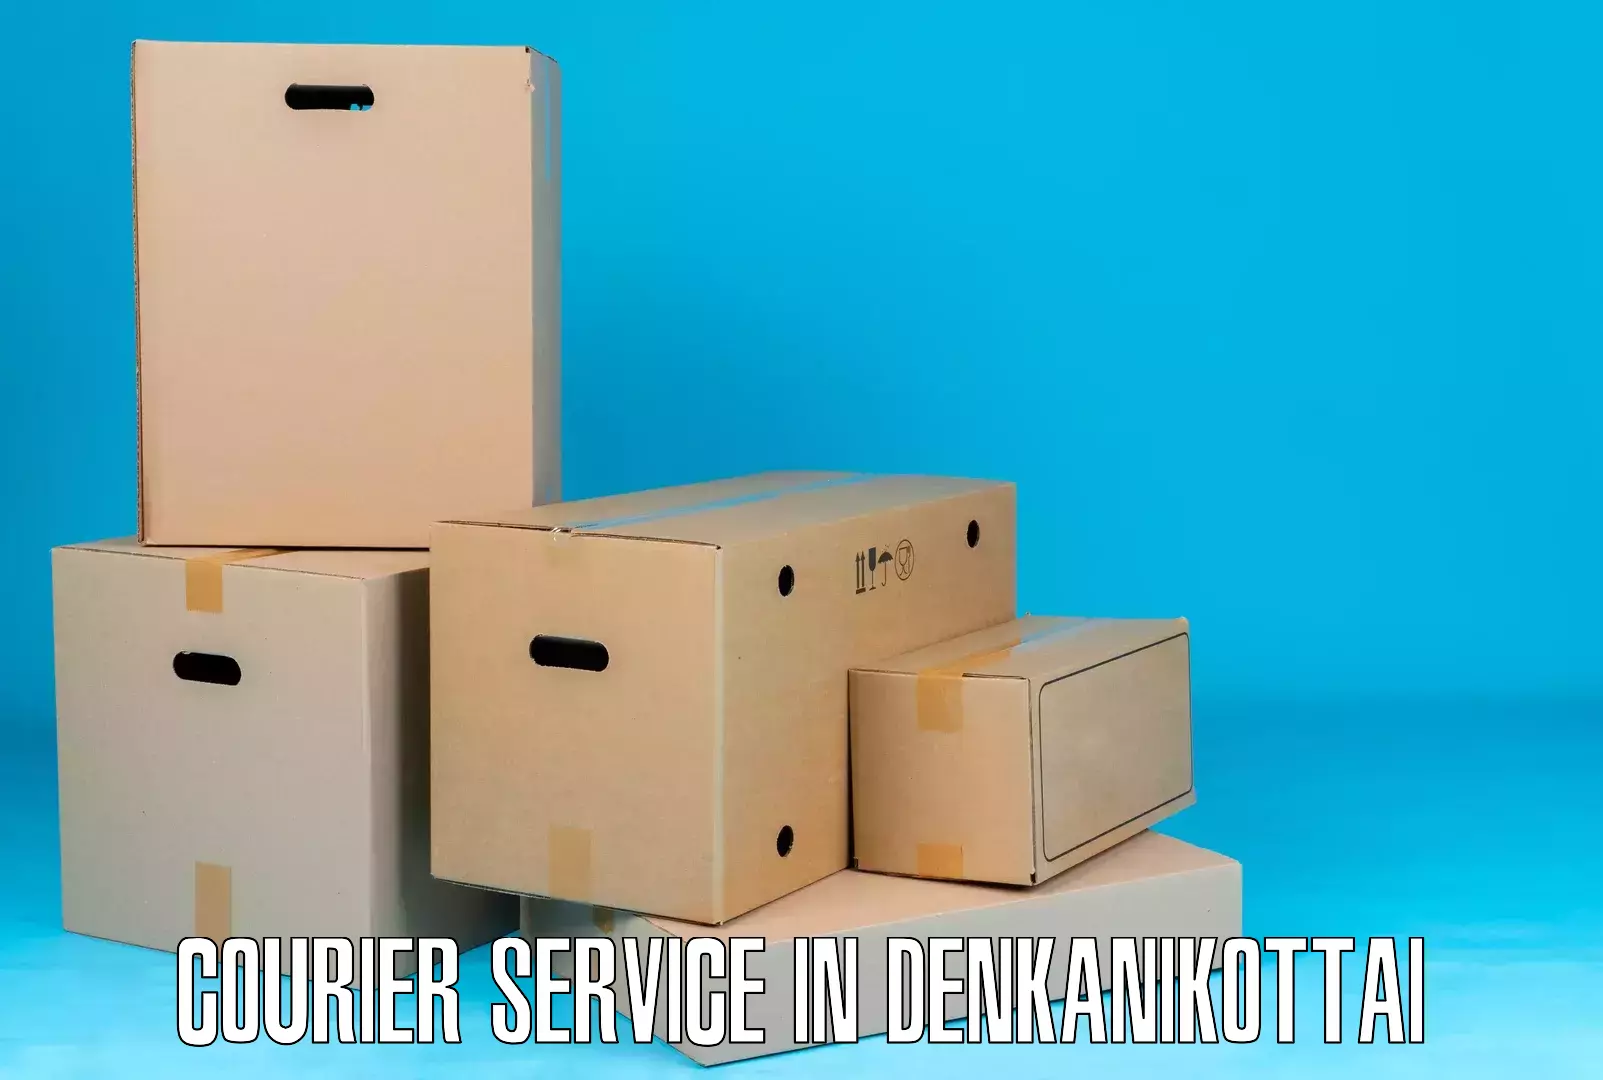 Overnight delivery in Denkanikottai